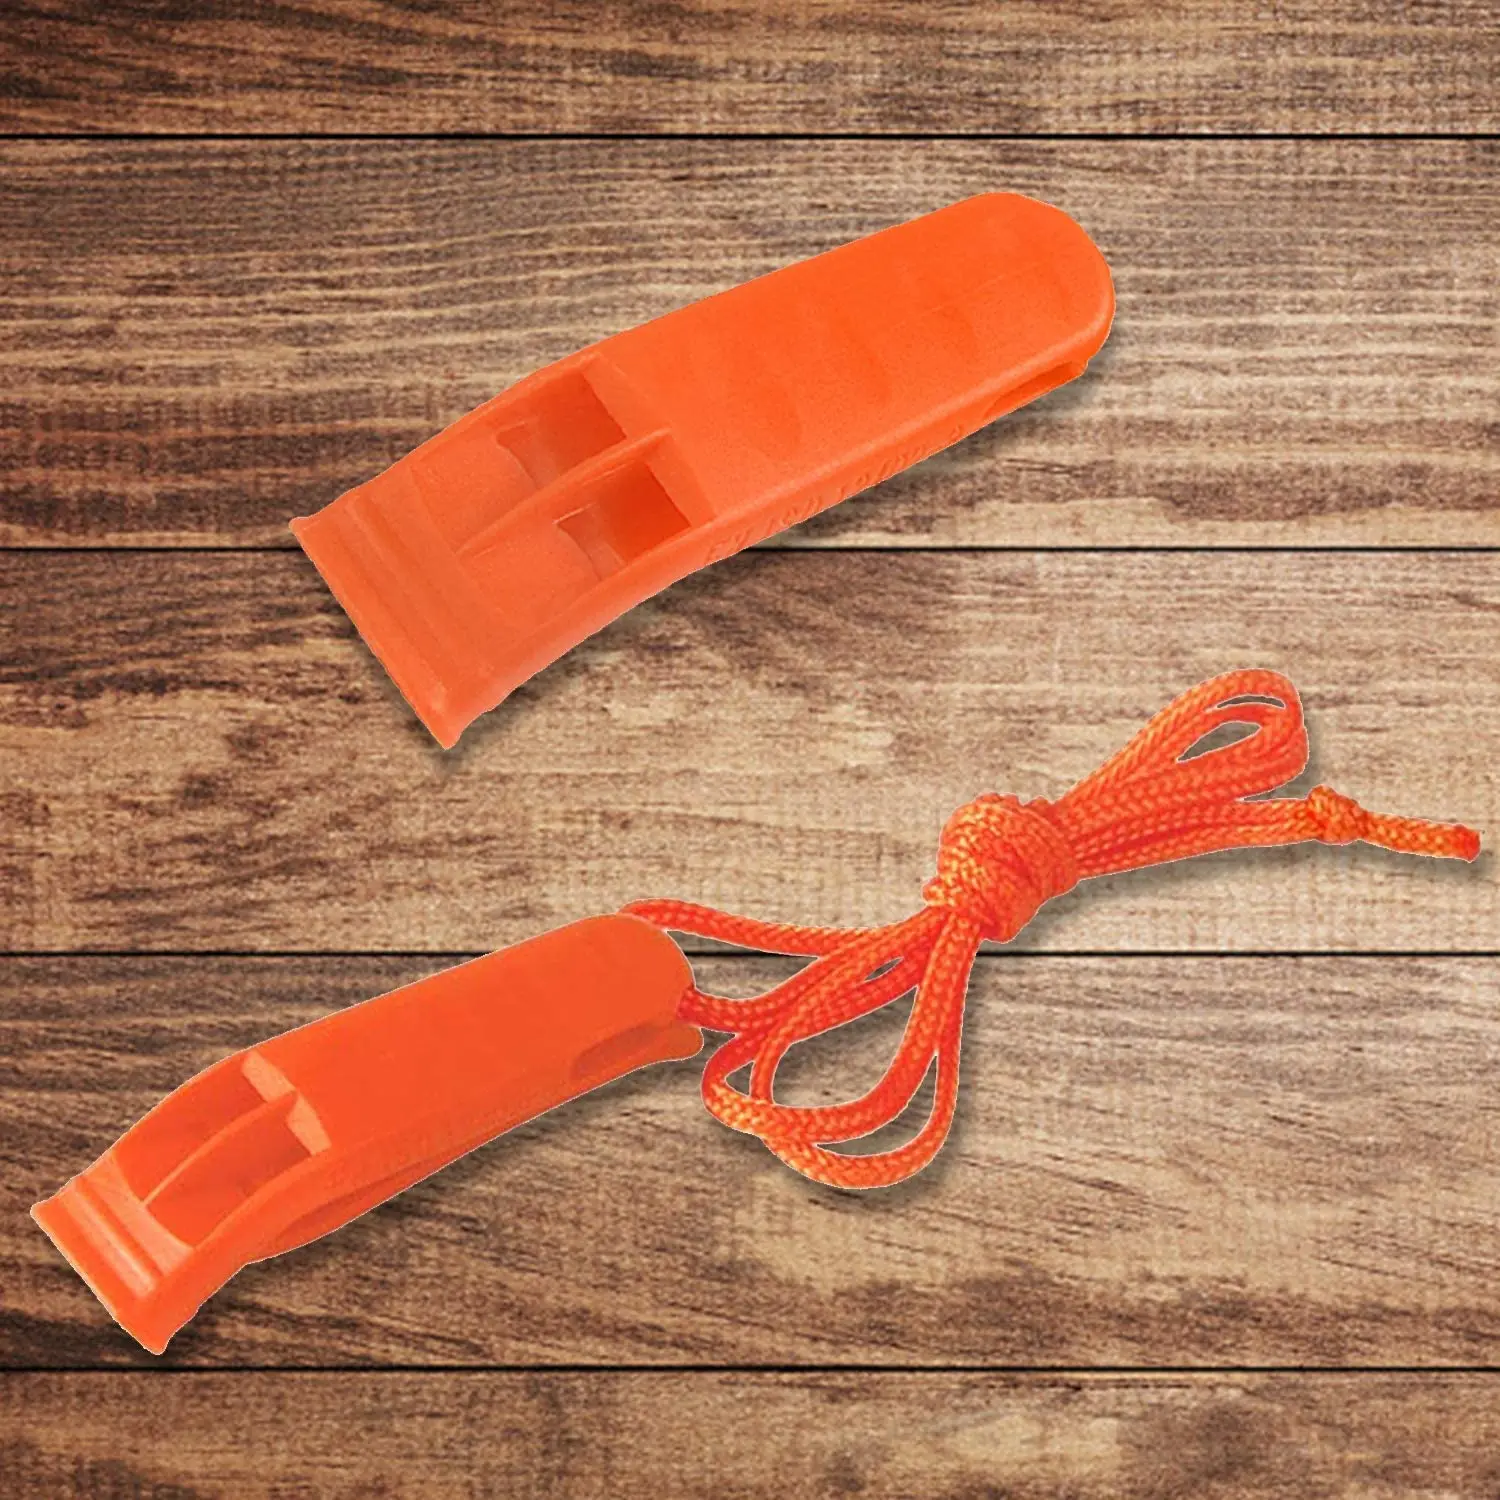 40 Ks Núdzové Bezpečnosť Píšťalka Plastové Píšťalky Set s ozdobná šnúrka na uniforme Červená Oranžová Píšťalky pre Bezpečnosť Prežitie Kempovanie Turistika Príručka